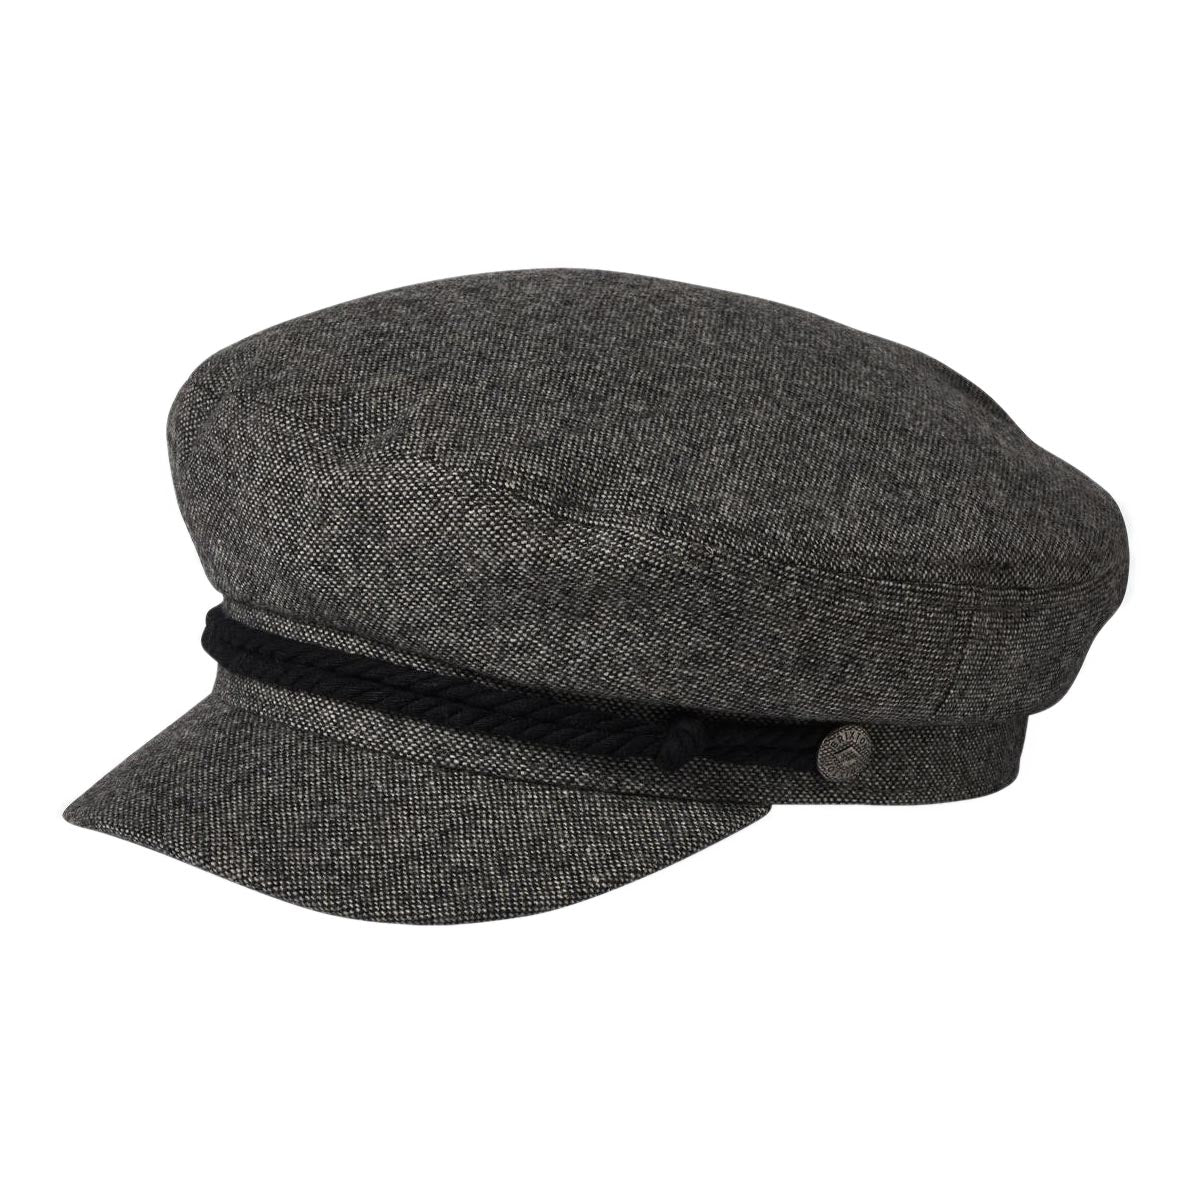 Brixton Fiddler Hat - Grey/Black image 1